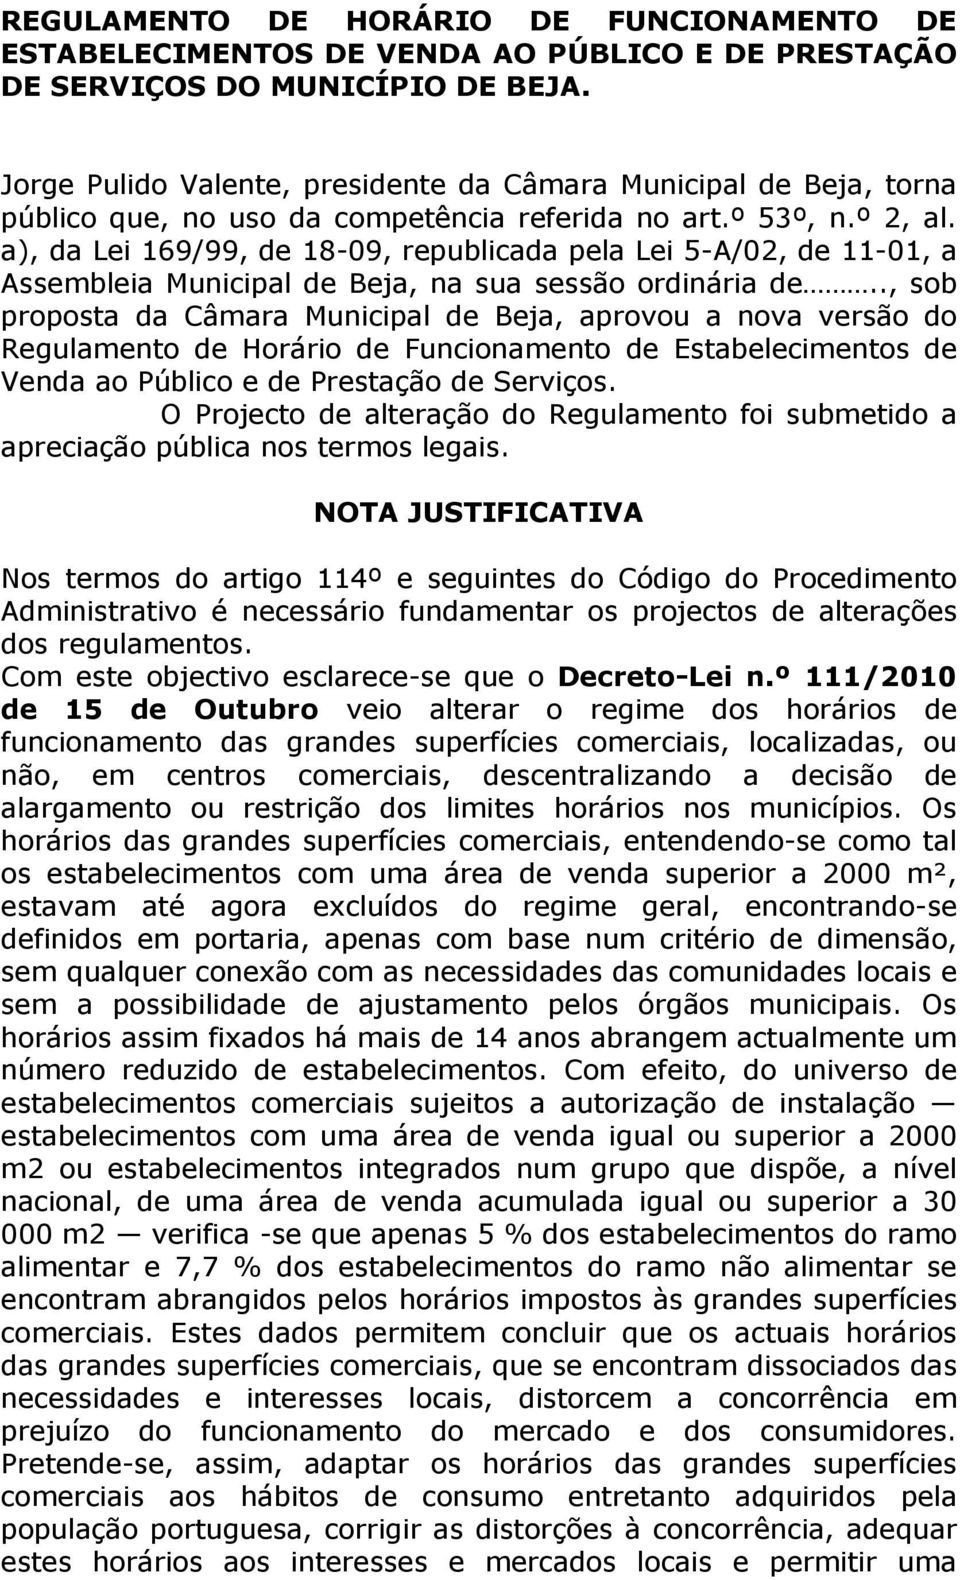 a), da Lei 169/99, de 18-09, republicada pela Lei 5-A/02, de 11-01, a Assembleia Municipal de Beja, na sua sessão ordinária de.